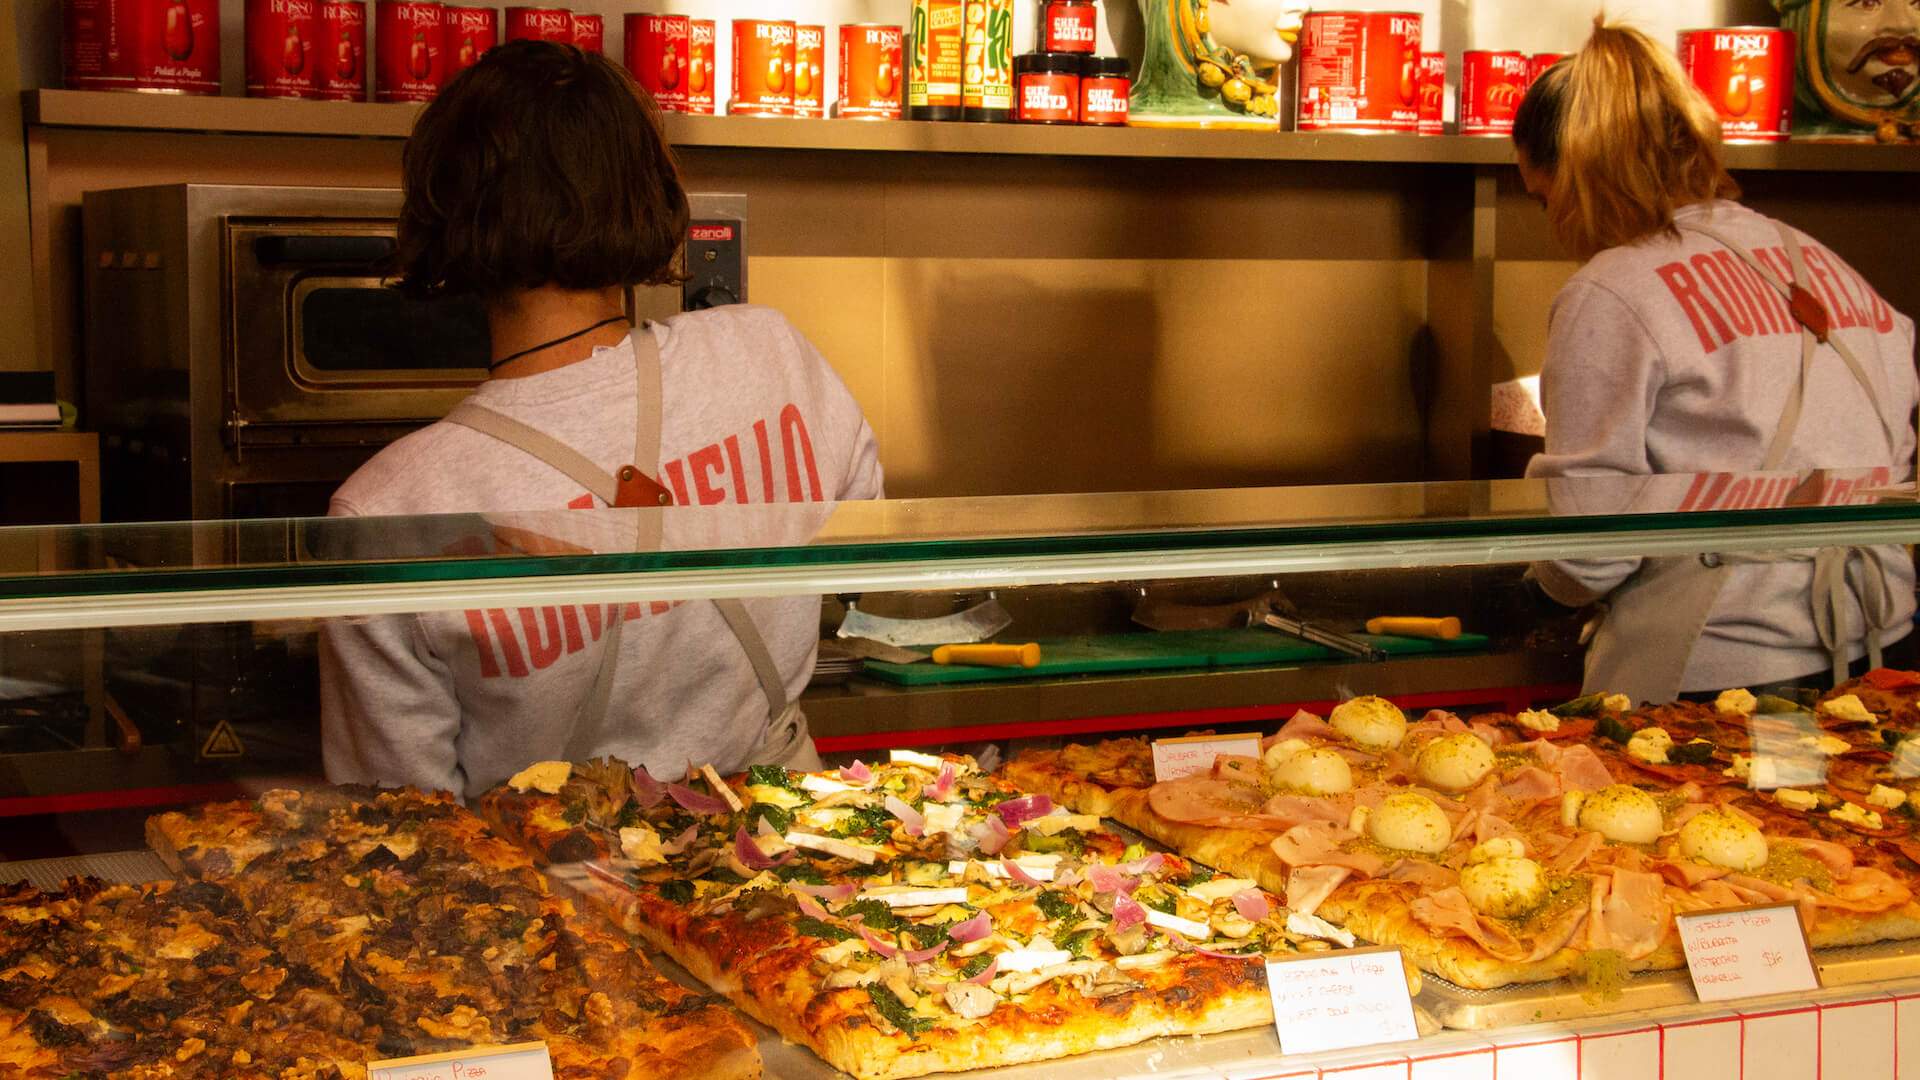 Romanello takeaway pizza and sandwiches - Queen Victoria Market